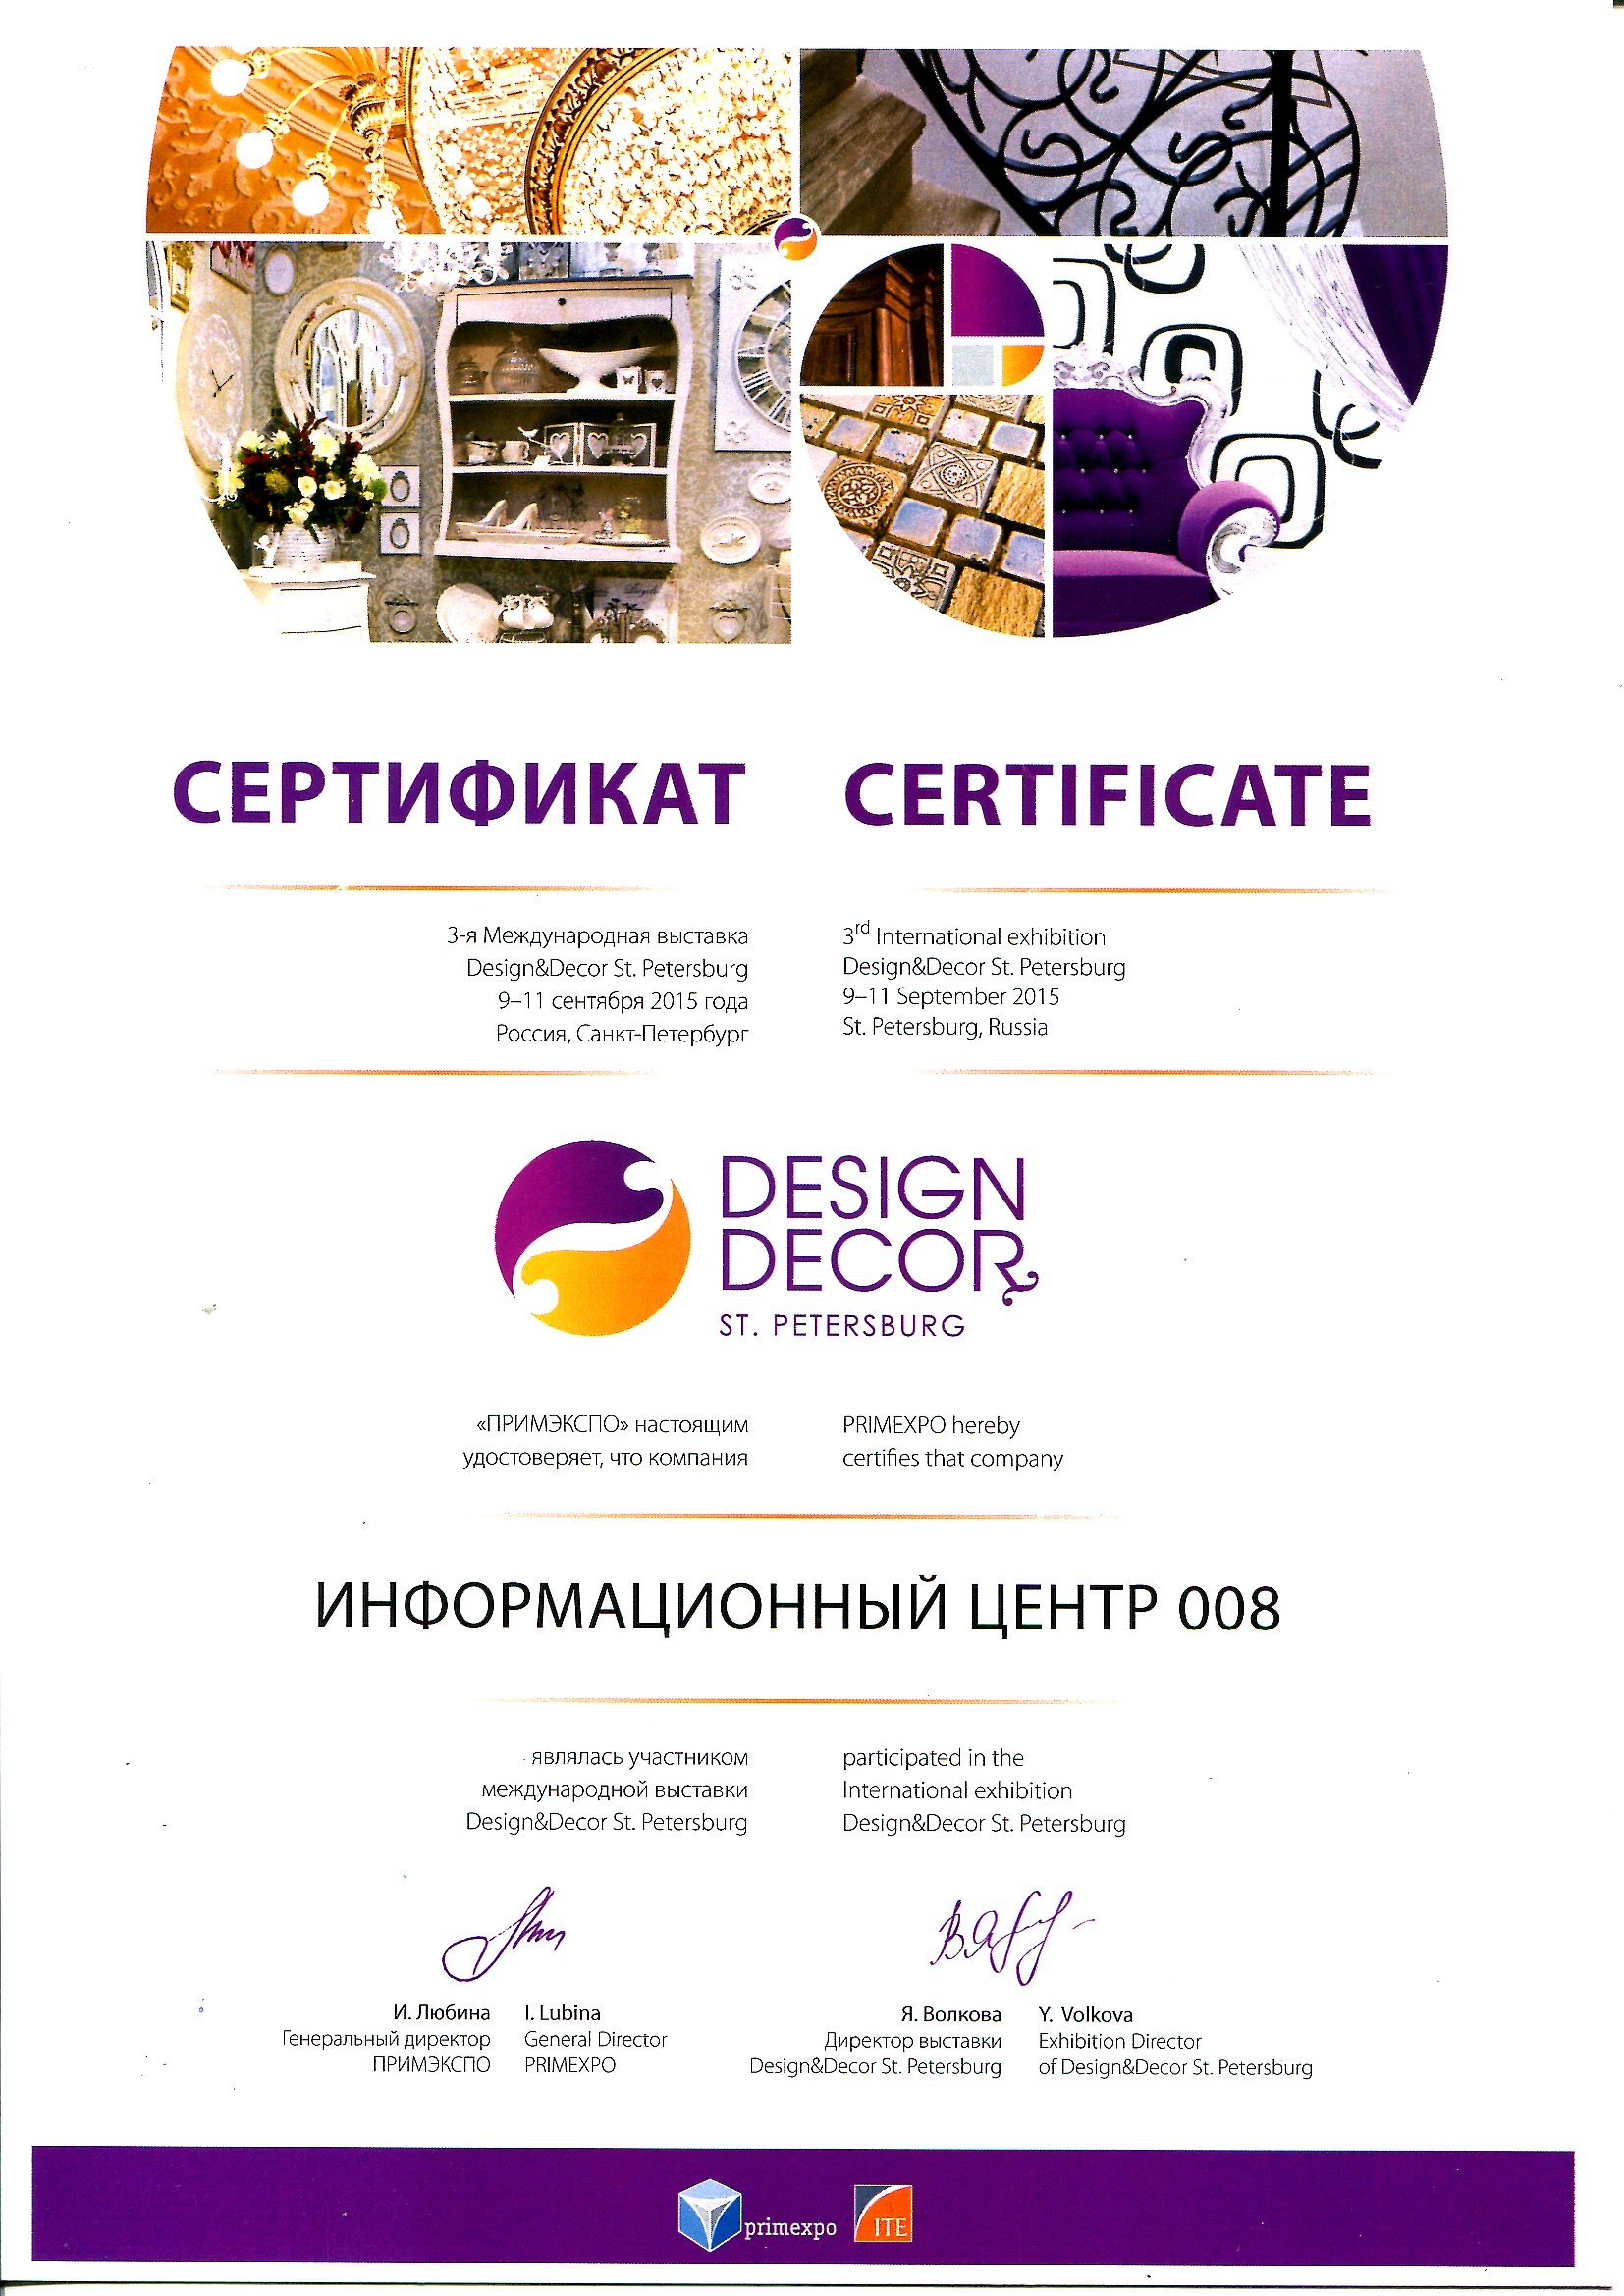 008.ru - партнер выставки дизайна